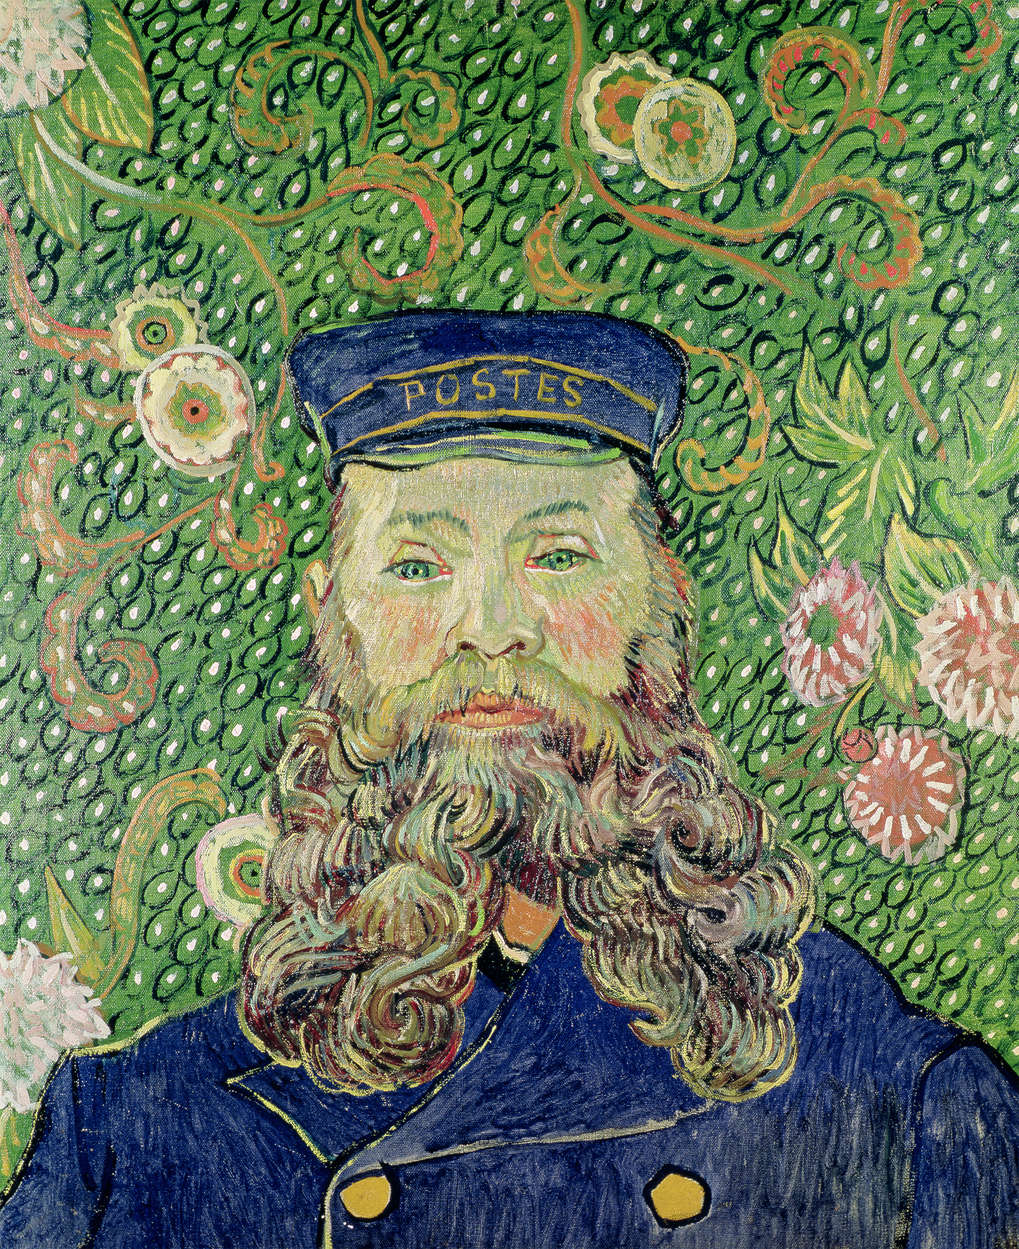             Papier peint panoramique "Portrait du facteur Joseph Roulin" de Vincent van Gogh
        